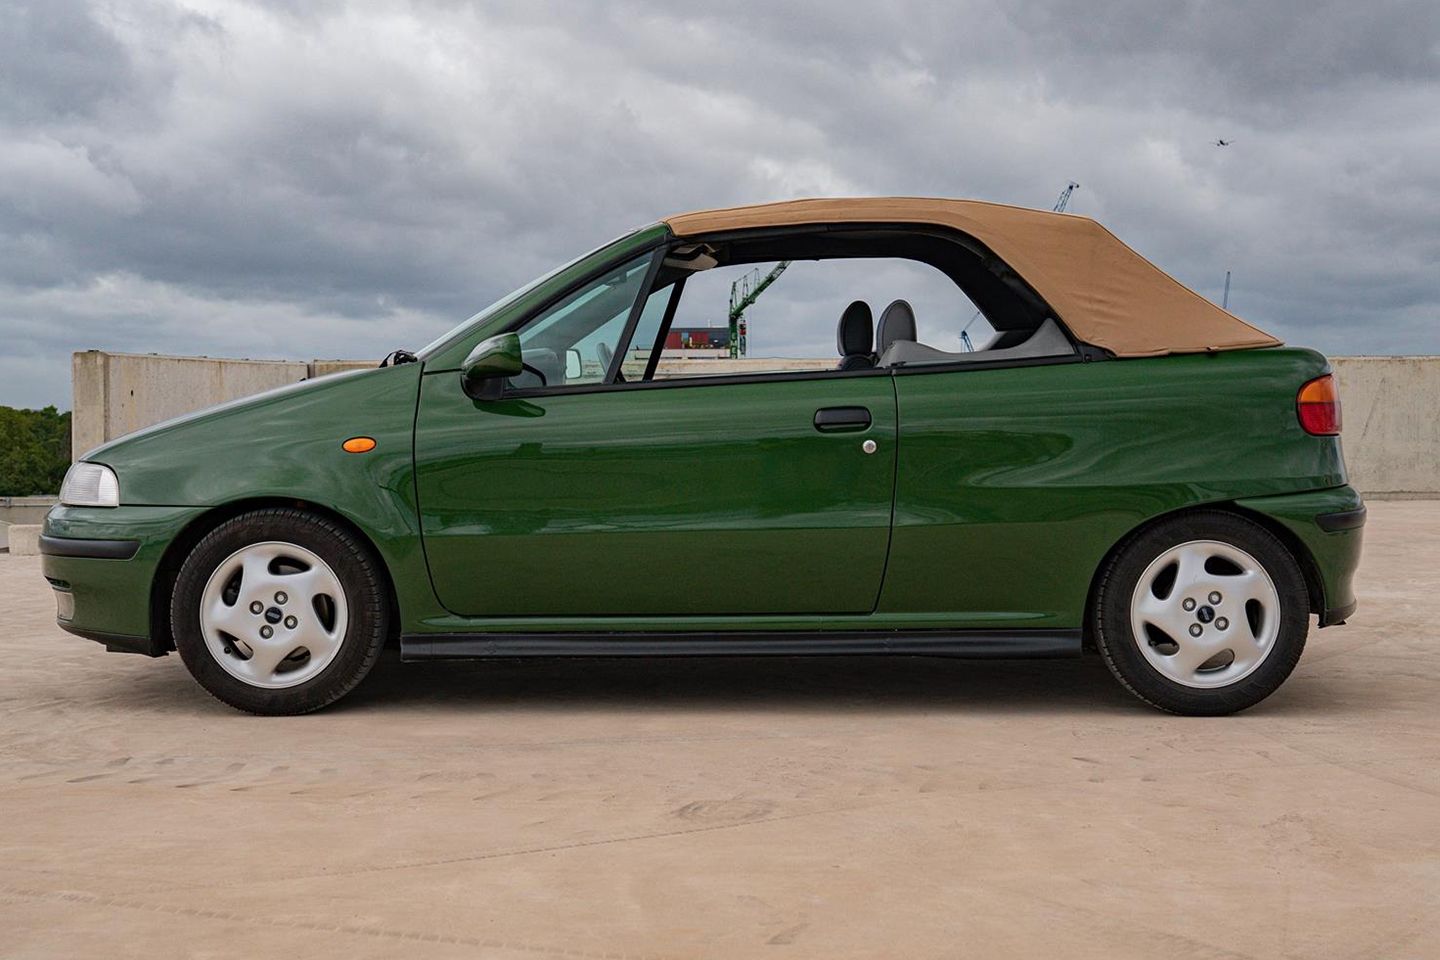 Tremendous Fiat Punto Cabriolet for sale - PistonHeads UK